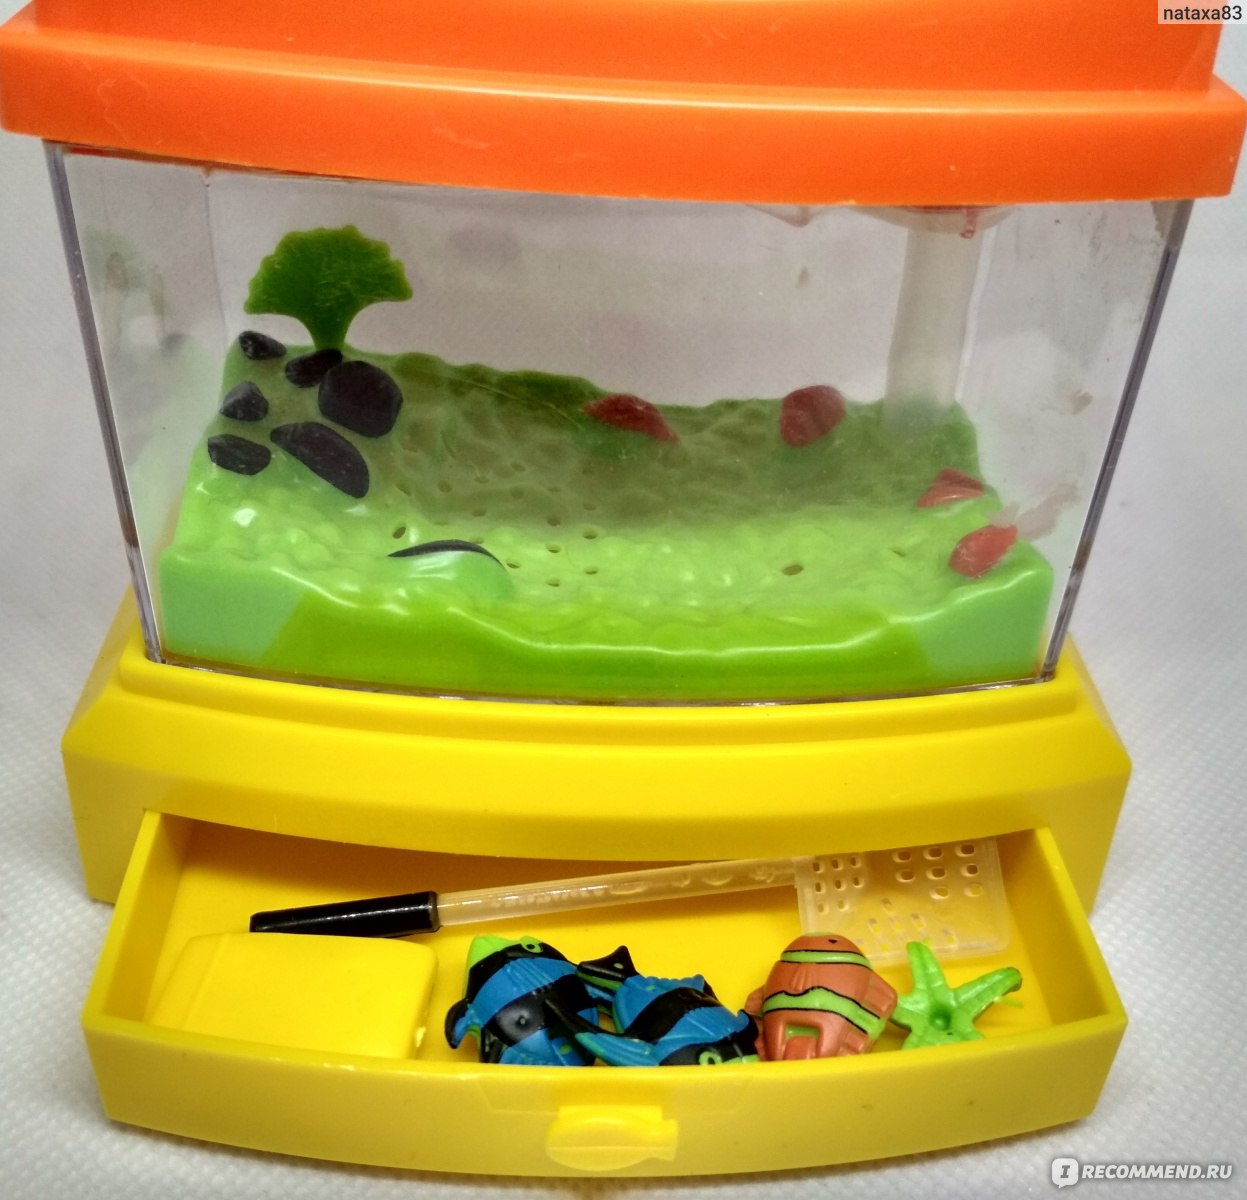 Детский аквариум купить. Игрушечный аквариум. Игрушка аквариум с рыбками. Детская игрушка аквариум с рыбками. Детский игрушечный аквариум с рыбкой.